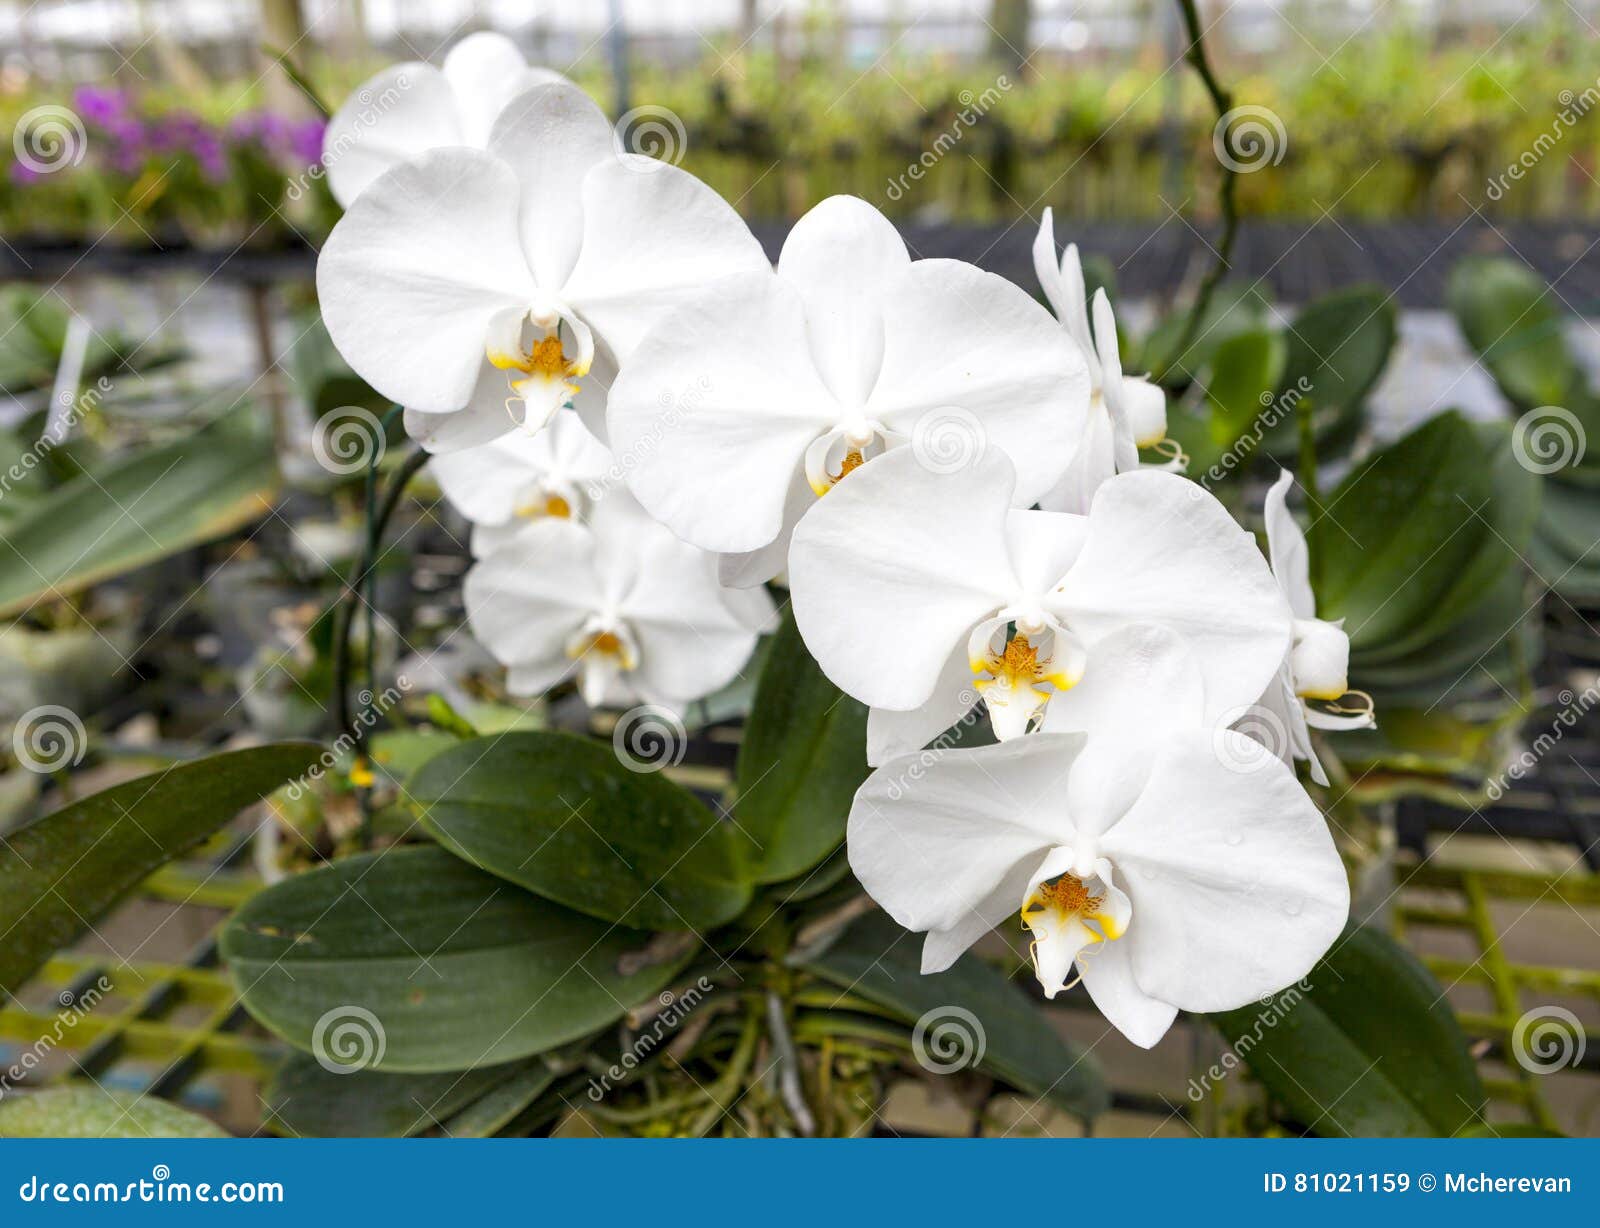 Um Ramo De Uma Grande Flor Branca Da Orquídea Close-up Bonito Das Flores  Flor Da Orquídea Em Um Ramo Em Um Jardim Das Orquídeas T Imagem de Stock -  Imagem de roxo,